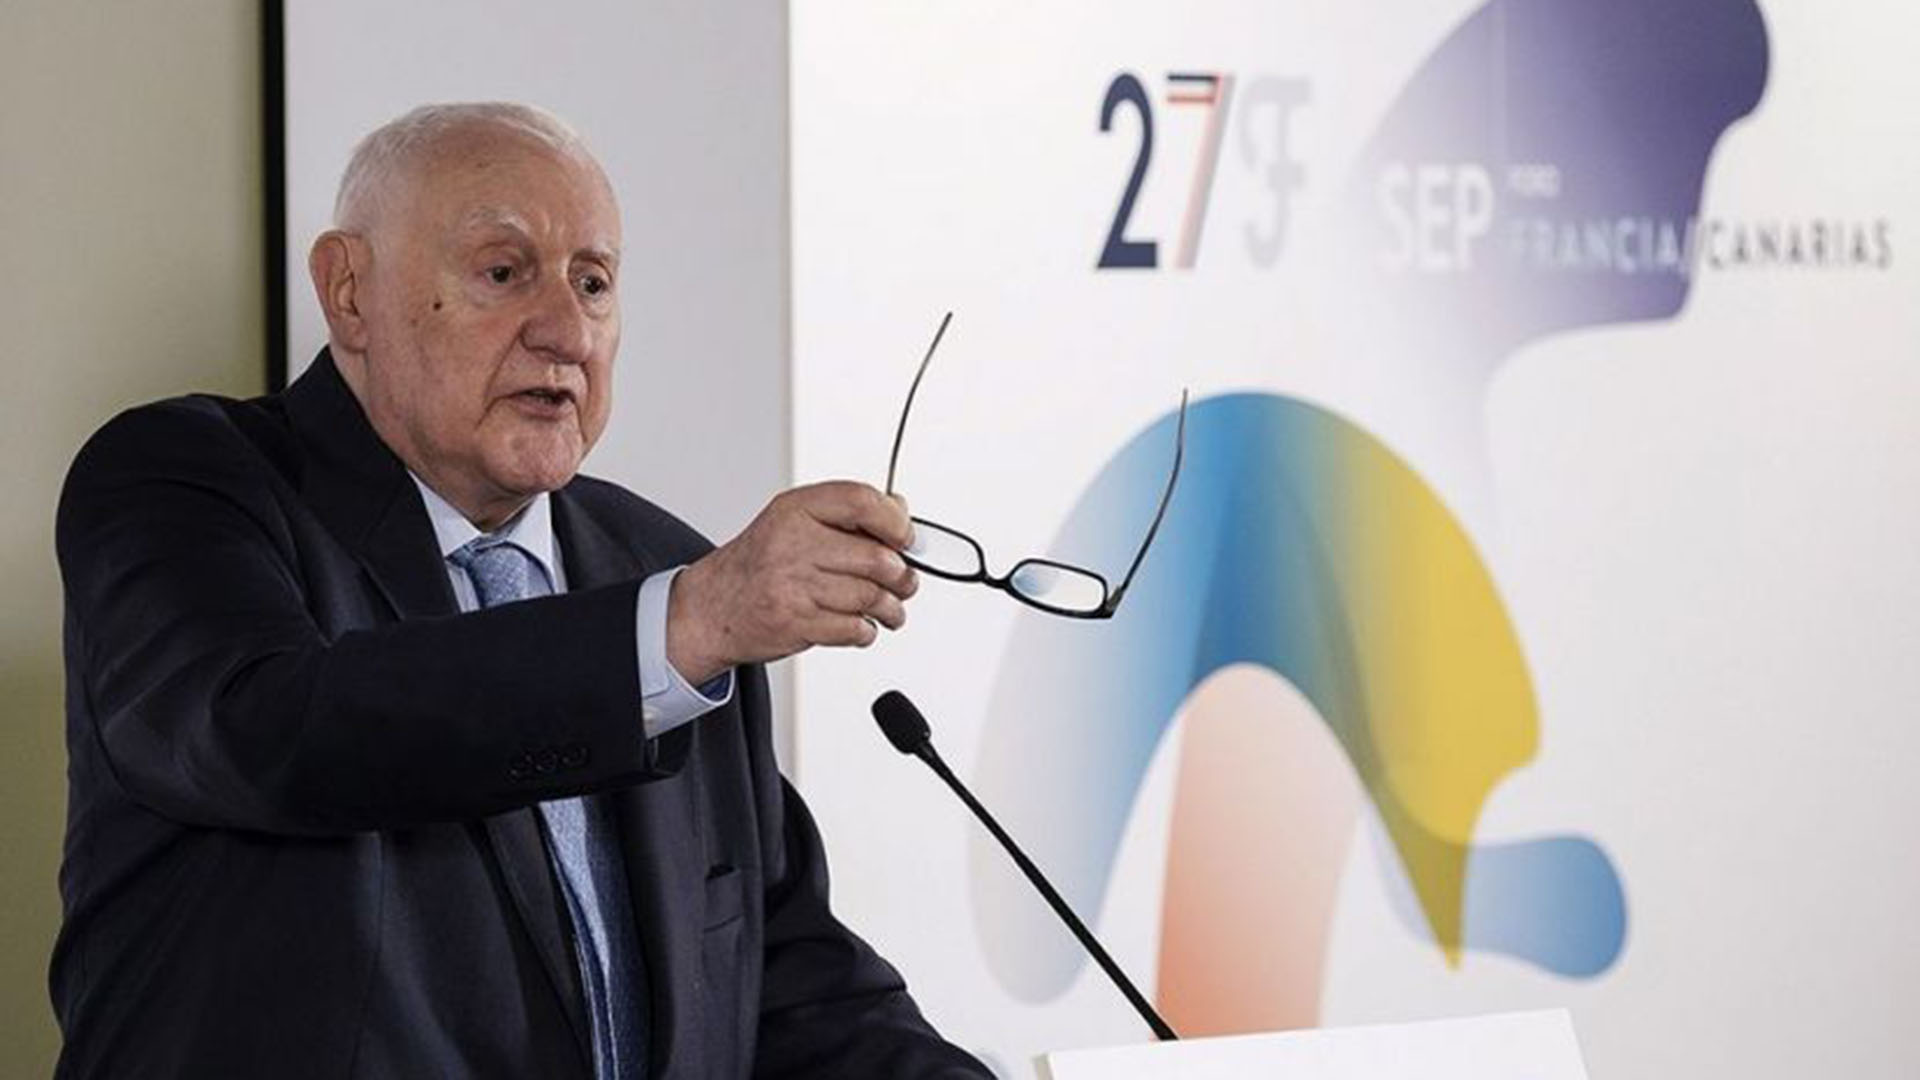 El historiador y Premio Príncipe de Asturias de Ciencias Sociales 2014, Joseph Pérez, durante una conferencia en Las Palmas de Gran Canaria.  27/09/2017. EFE/Ángel Medina G.